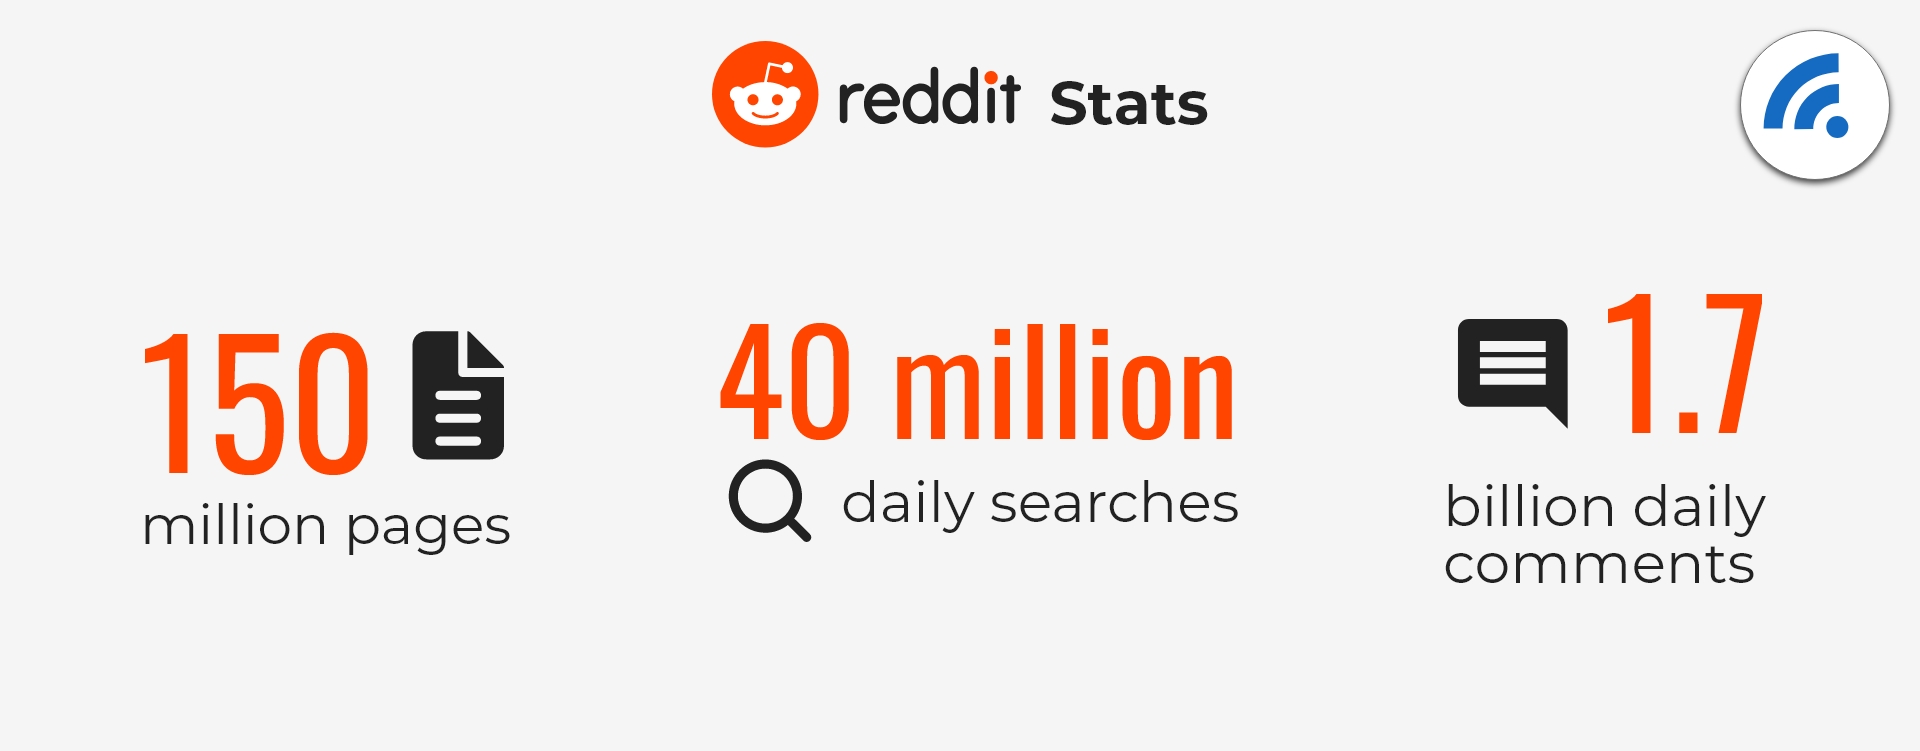 Reddit Statistics